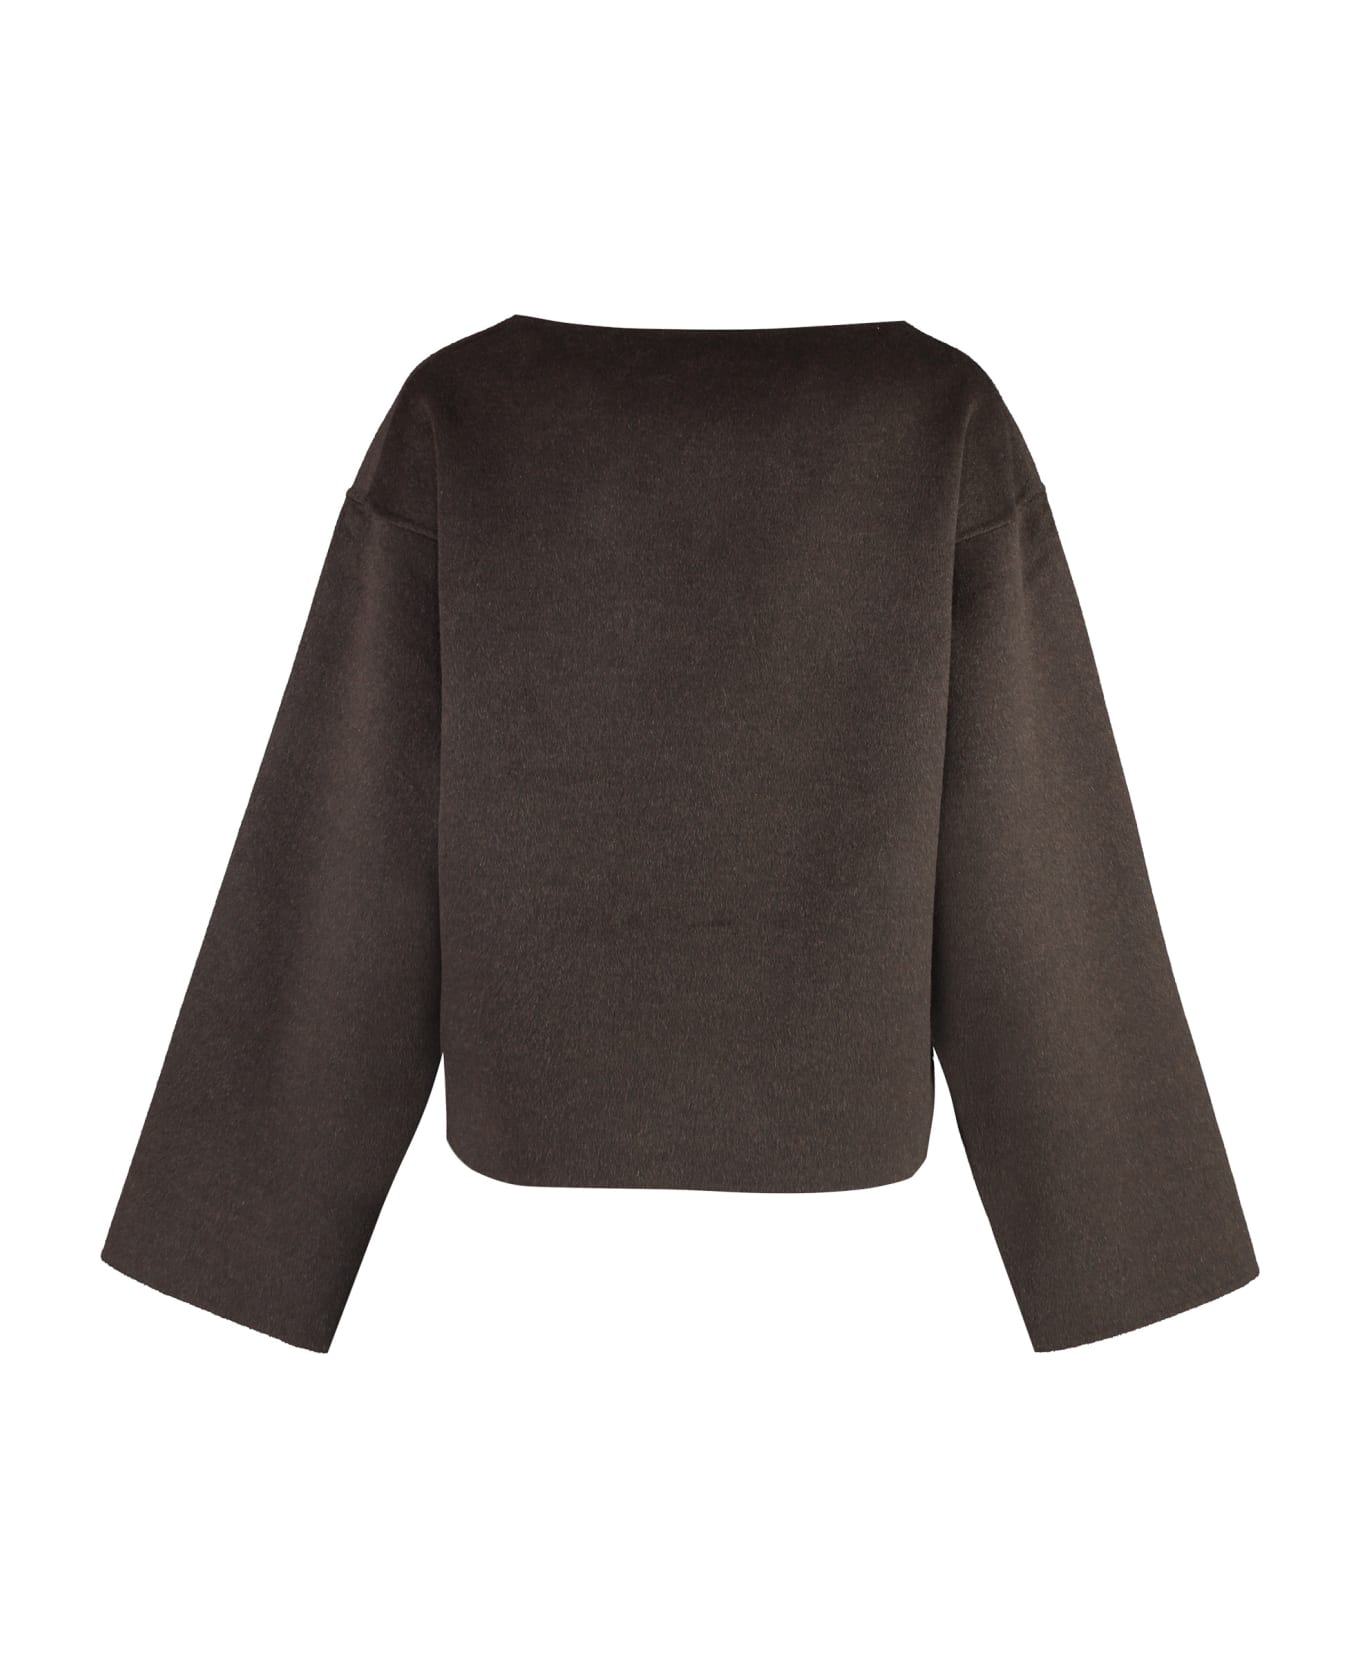 Totême Wool Sweater - brown